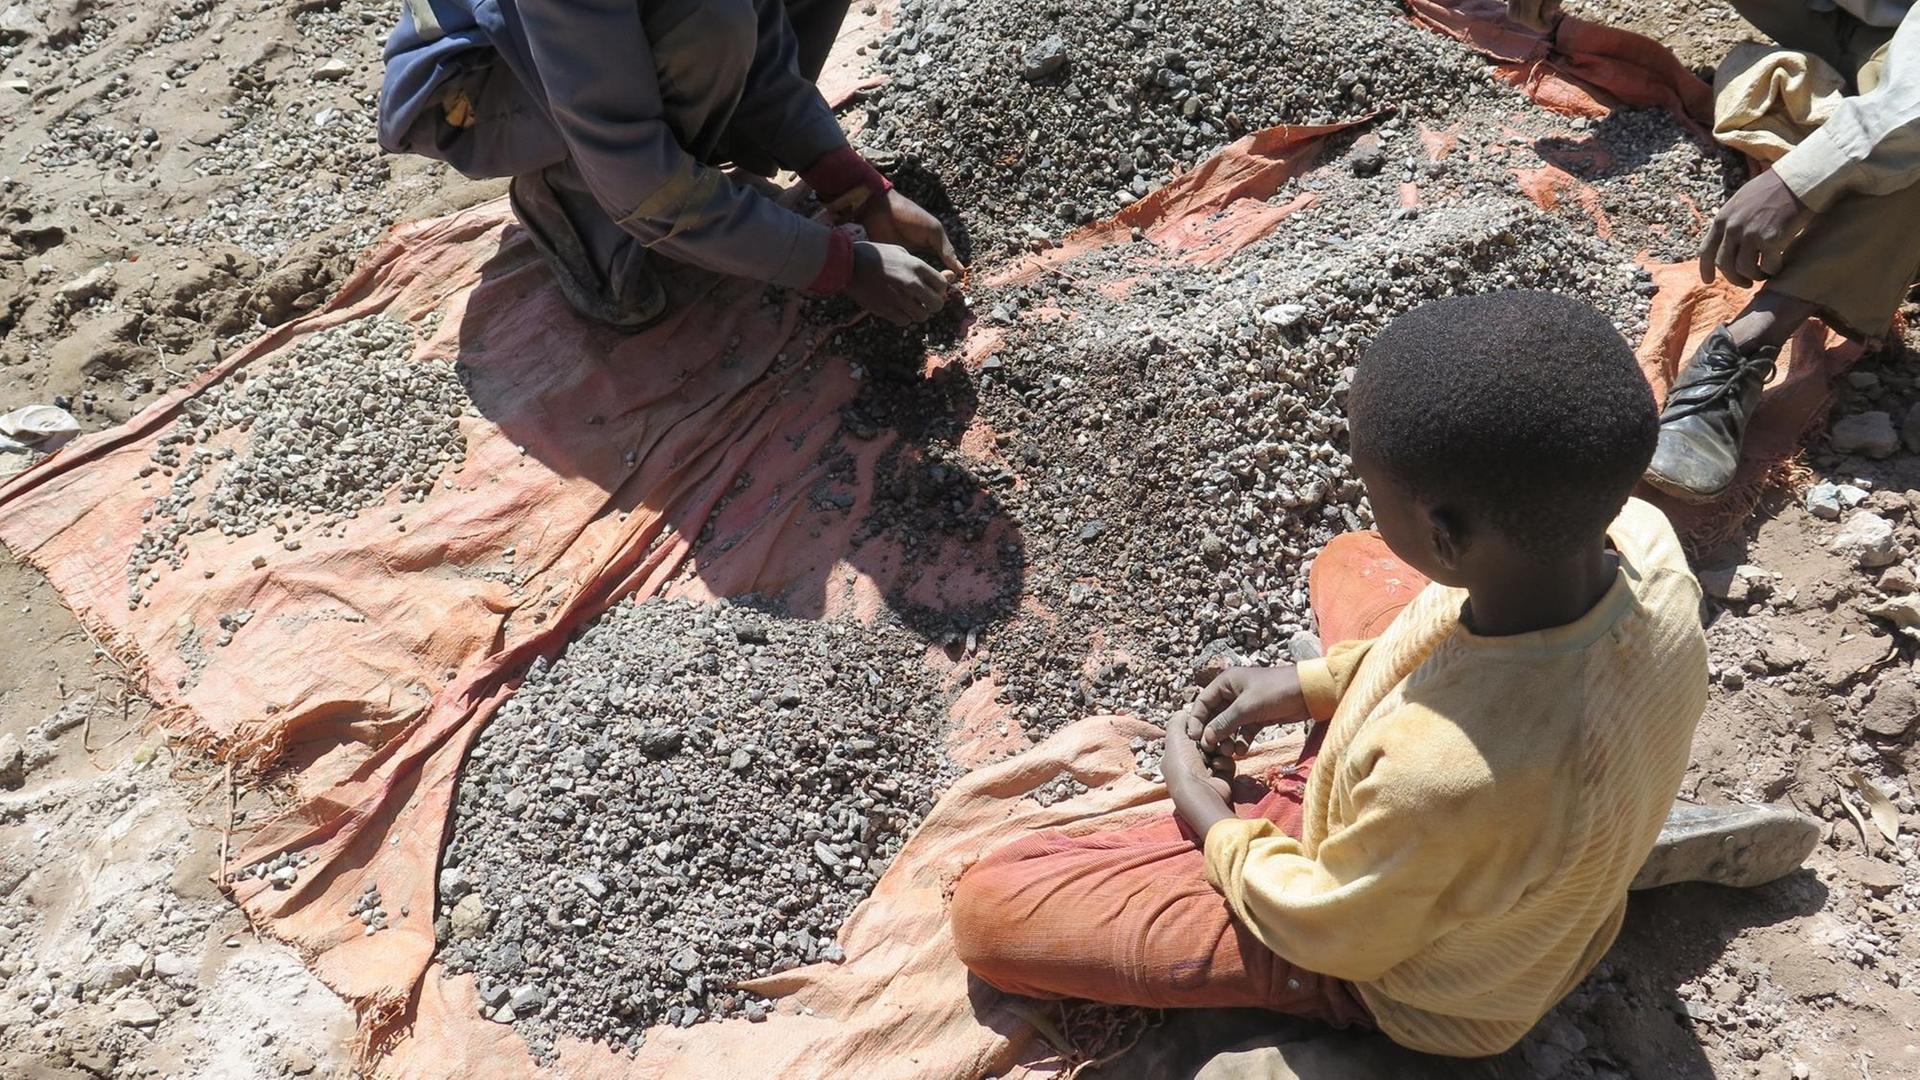 Kinder arbeiten auf dem Boden sitzend in einer Kobaltmine im Kongo.